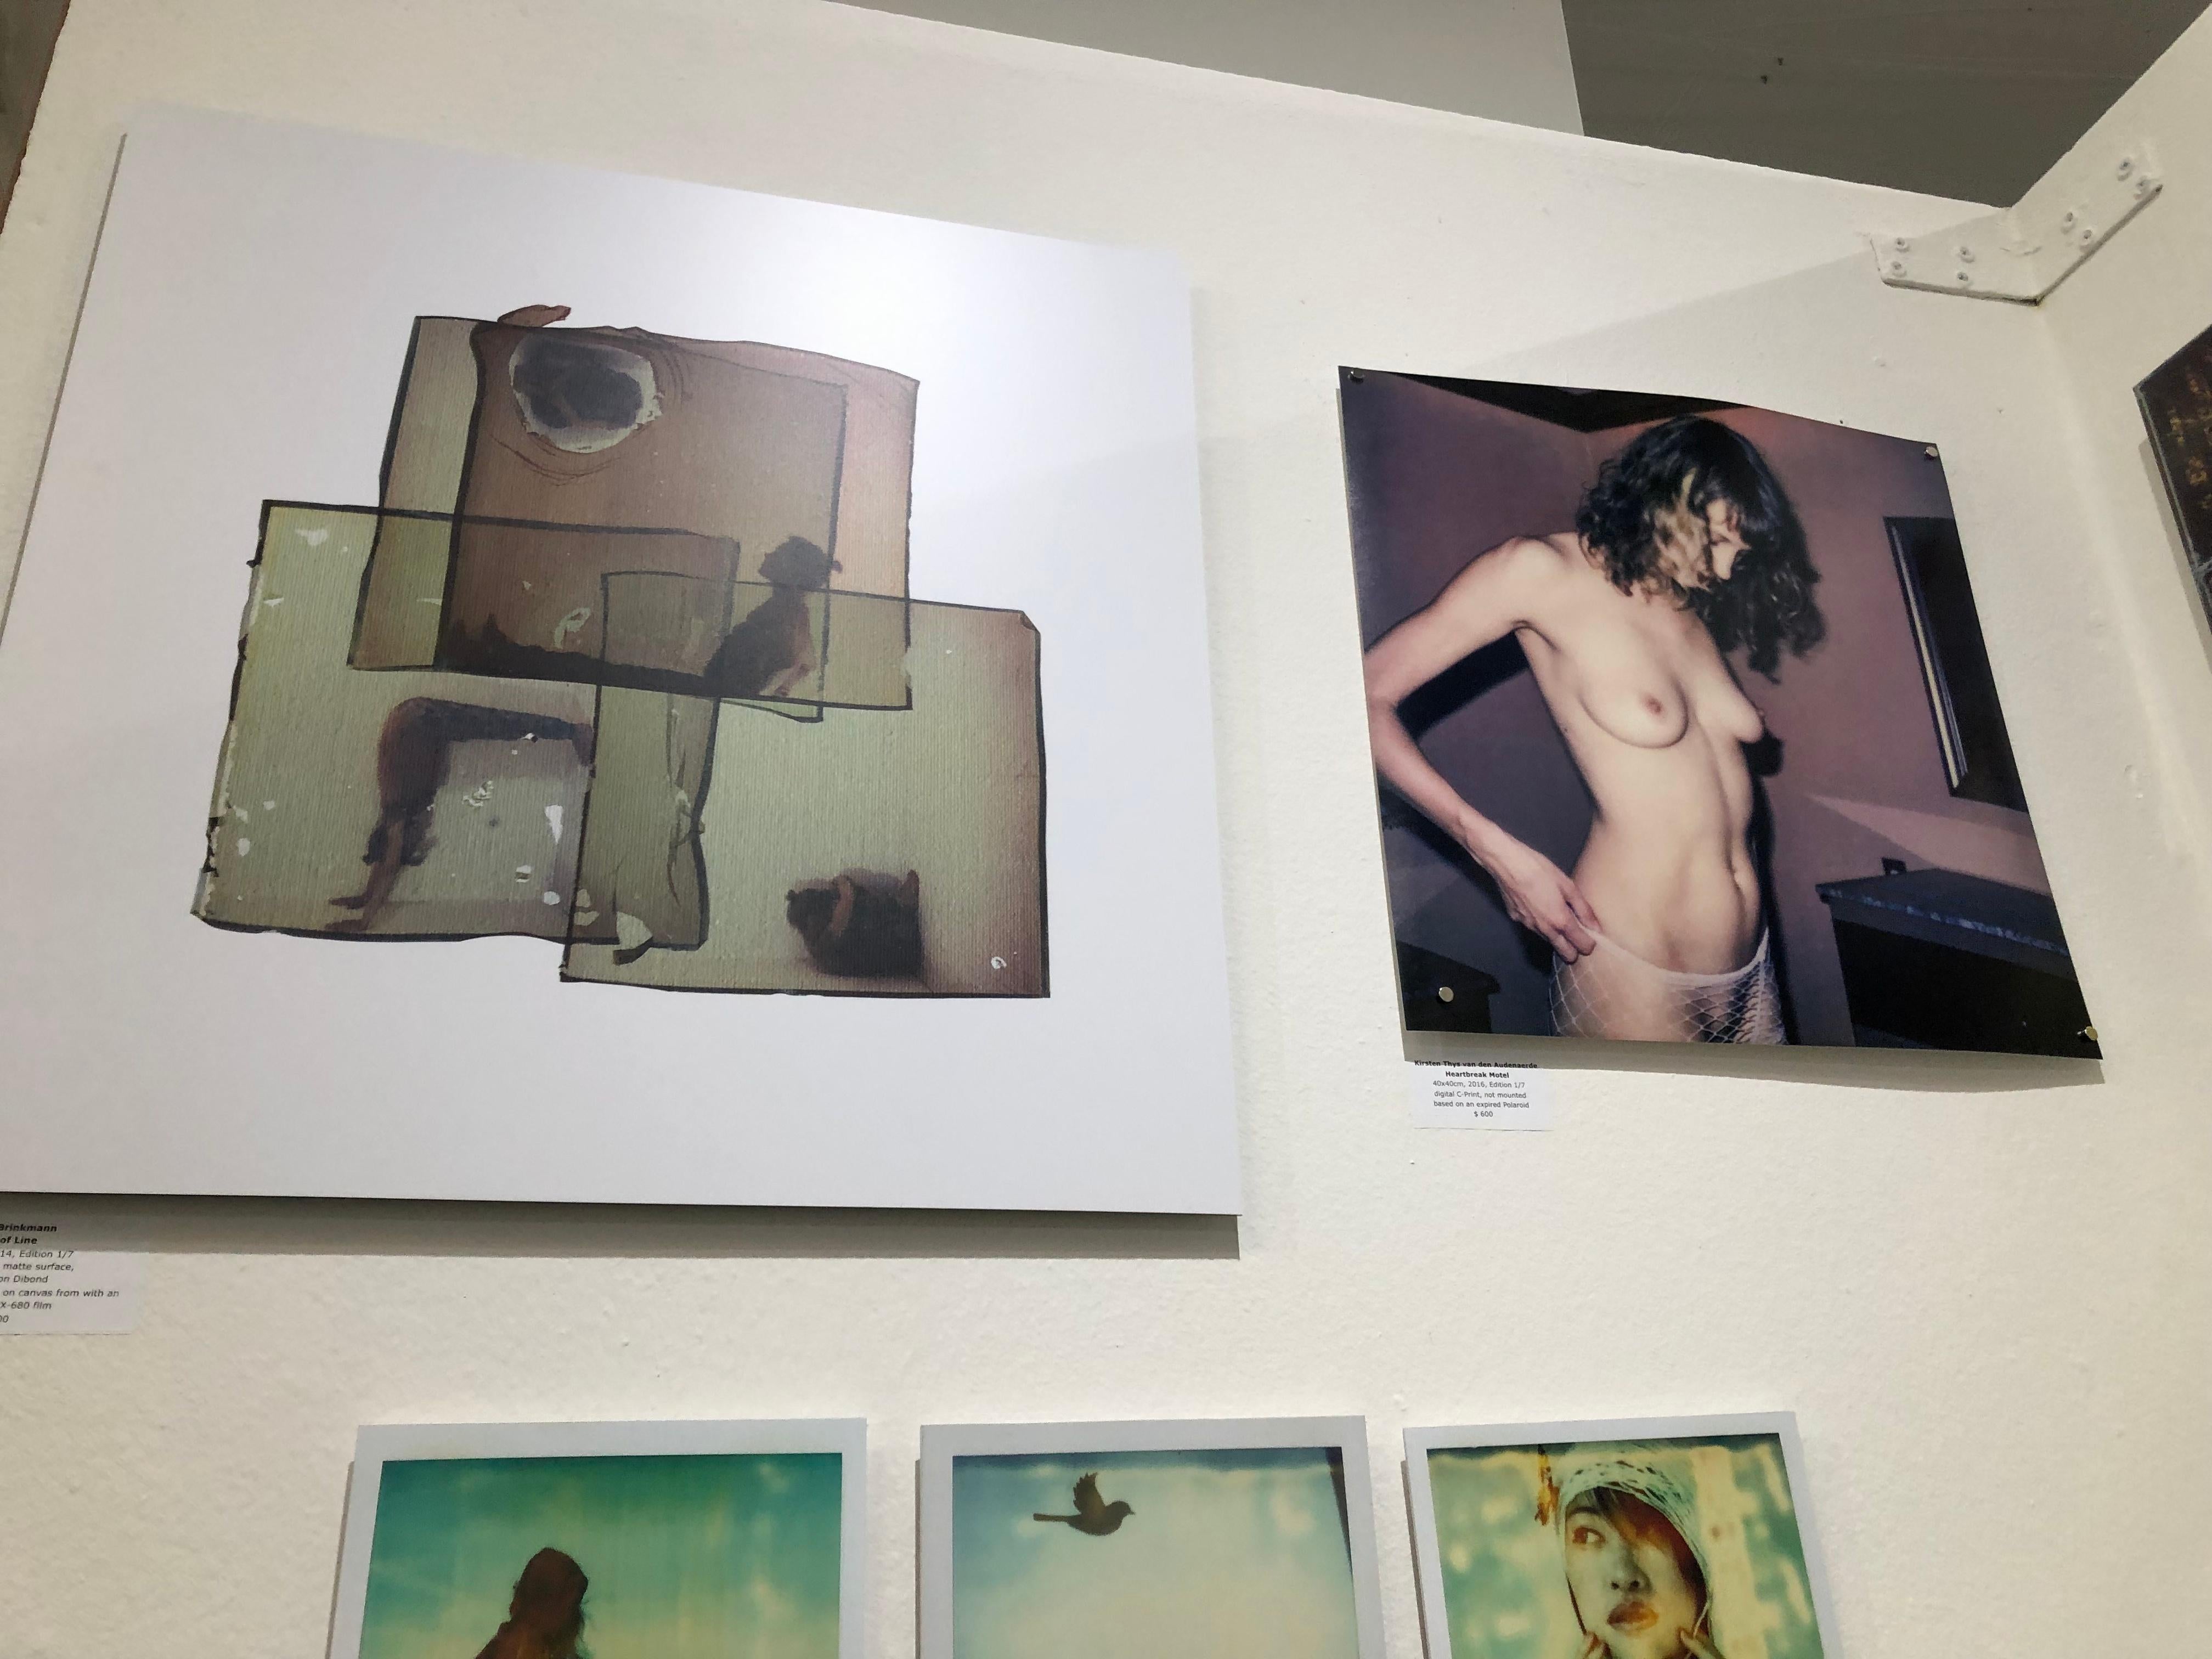 Heartbreak Motel - Polaroid, Zeitgenössisch, 21. Jahrhundert, Farbe, Frauen – Photograph von Kirsten Thys van den Audenaerde